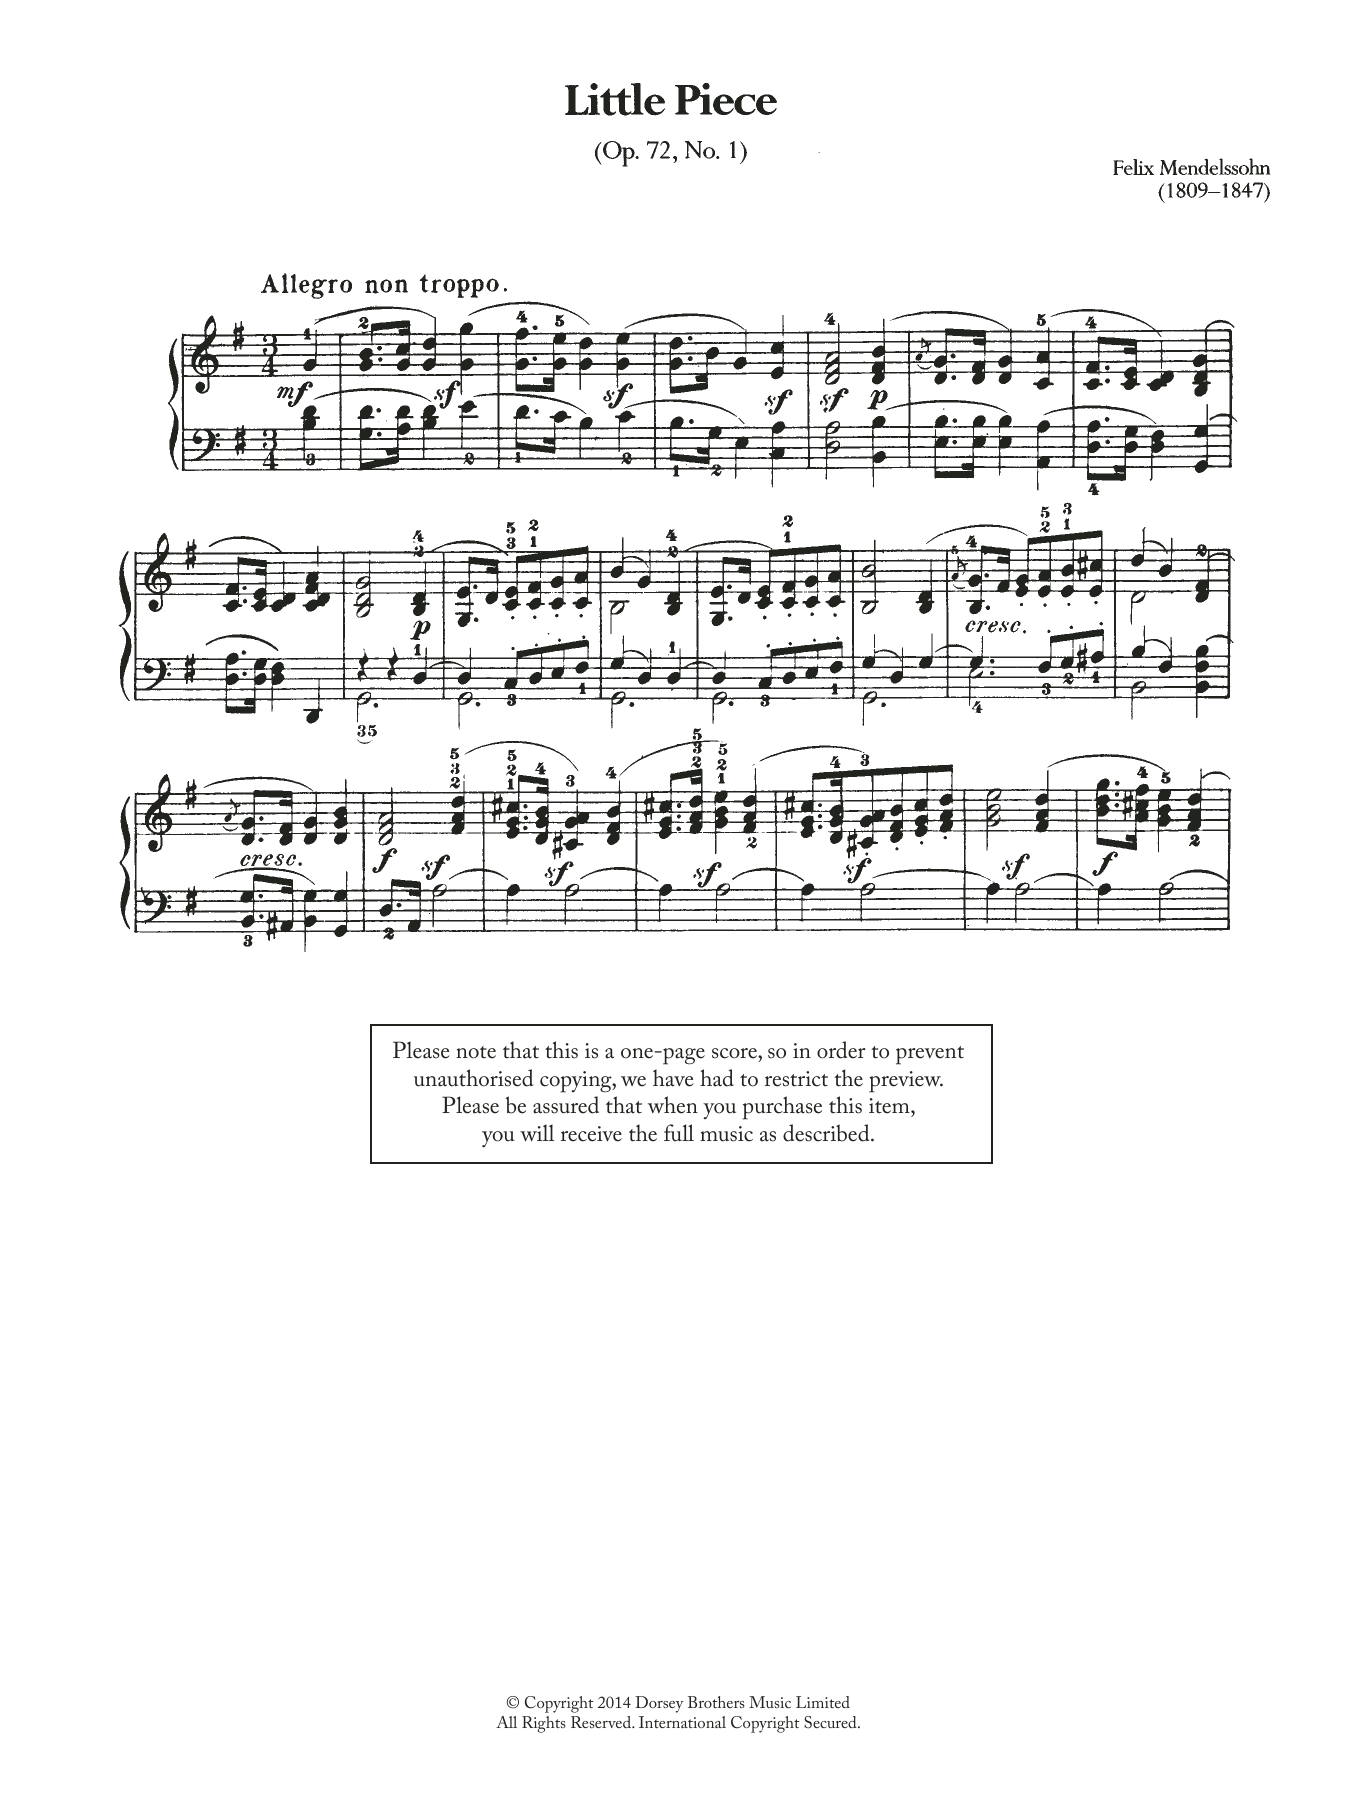 Download Felix Mendelssohn Little Piece, Op.72 No.1 Sheet Music